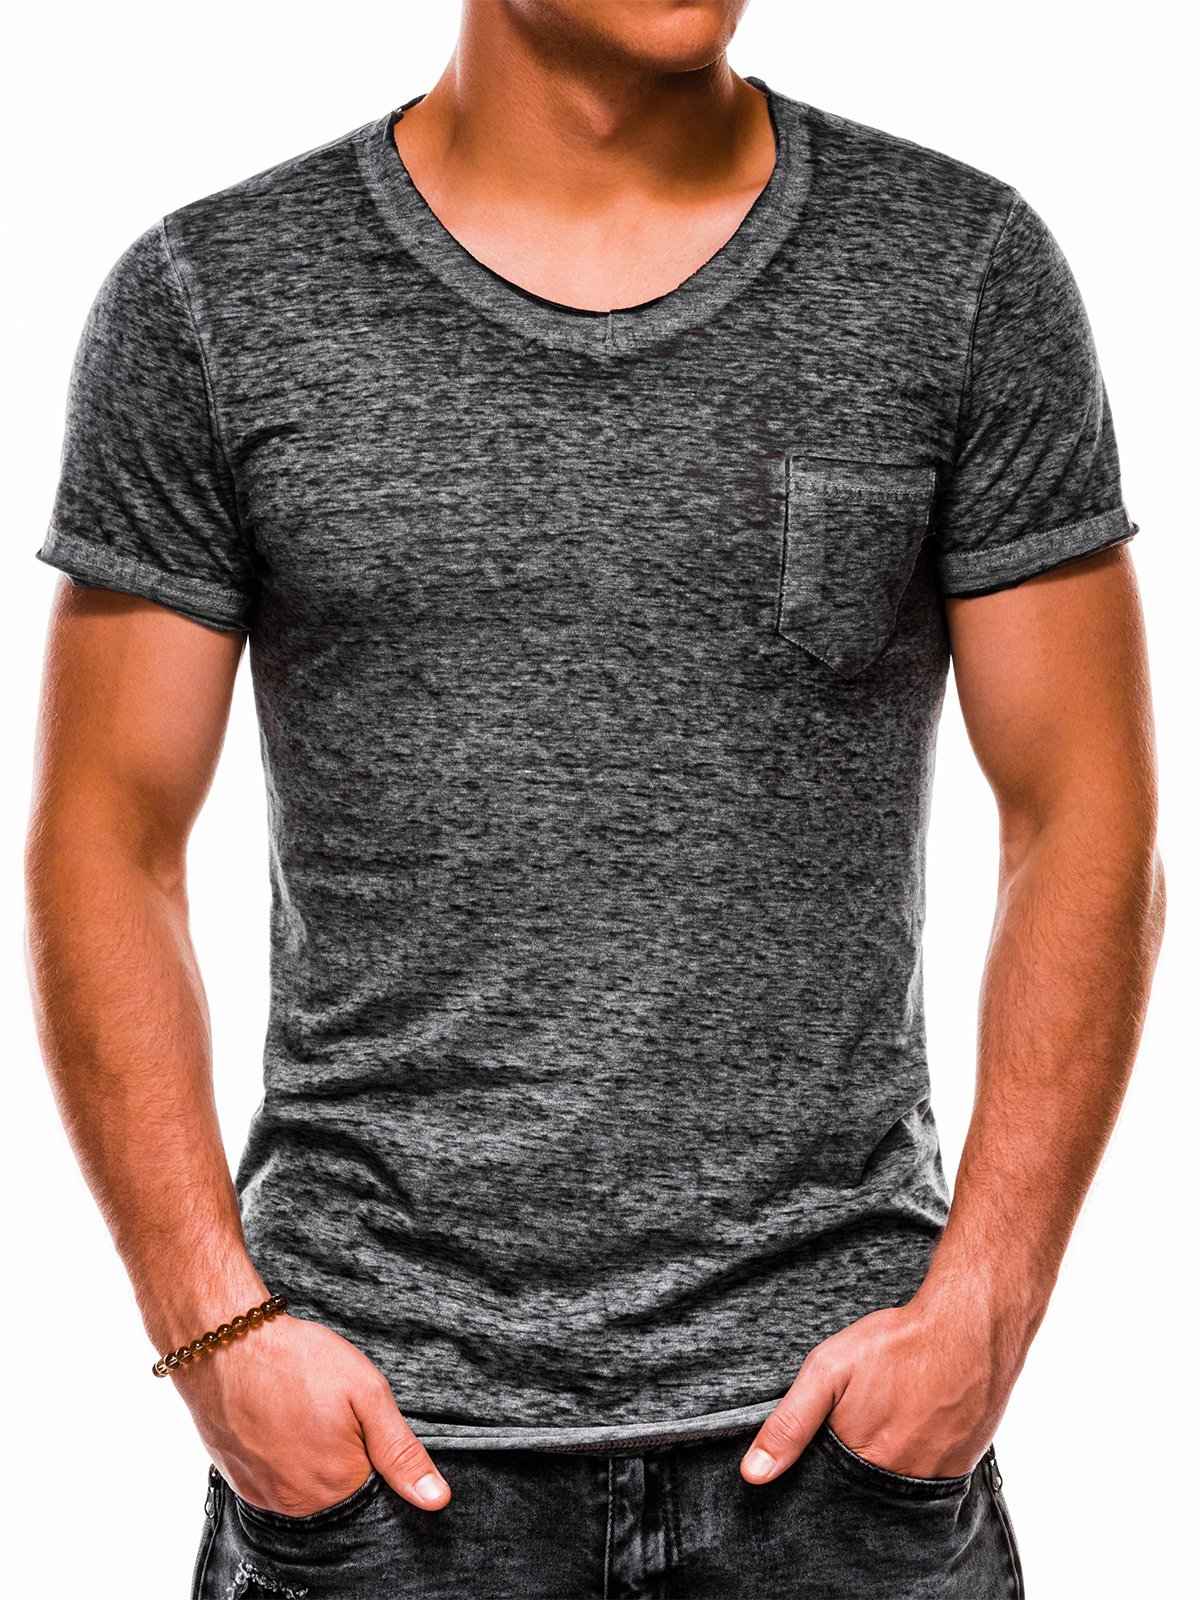 Men's plain t-shirt S1051 - grey | MODONE wholesale - Clothing For Men